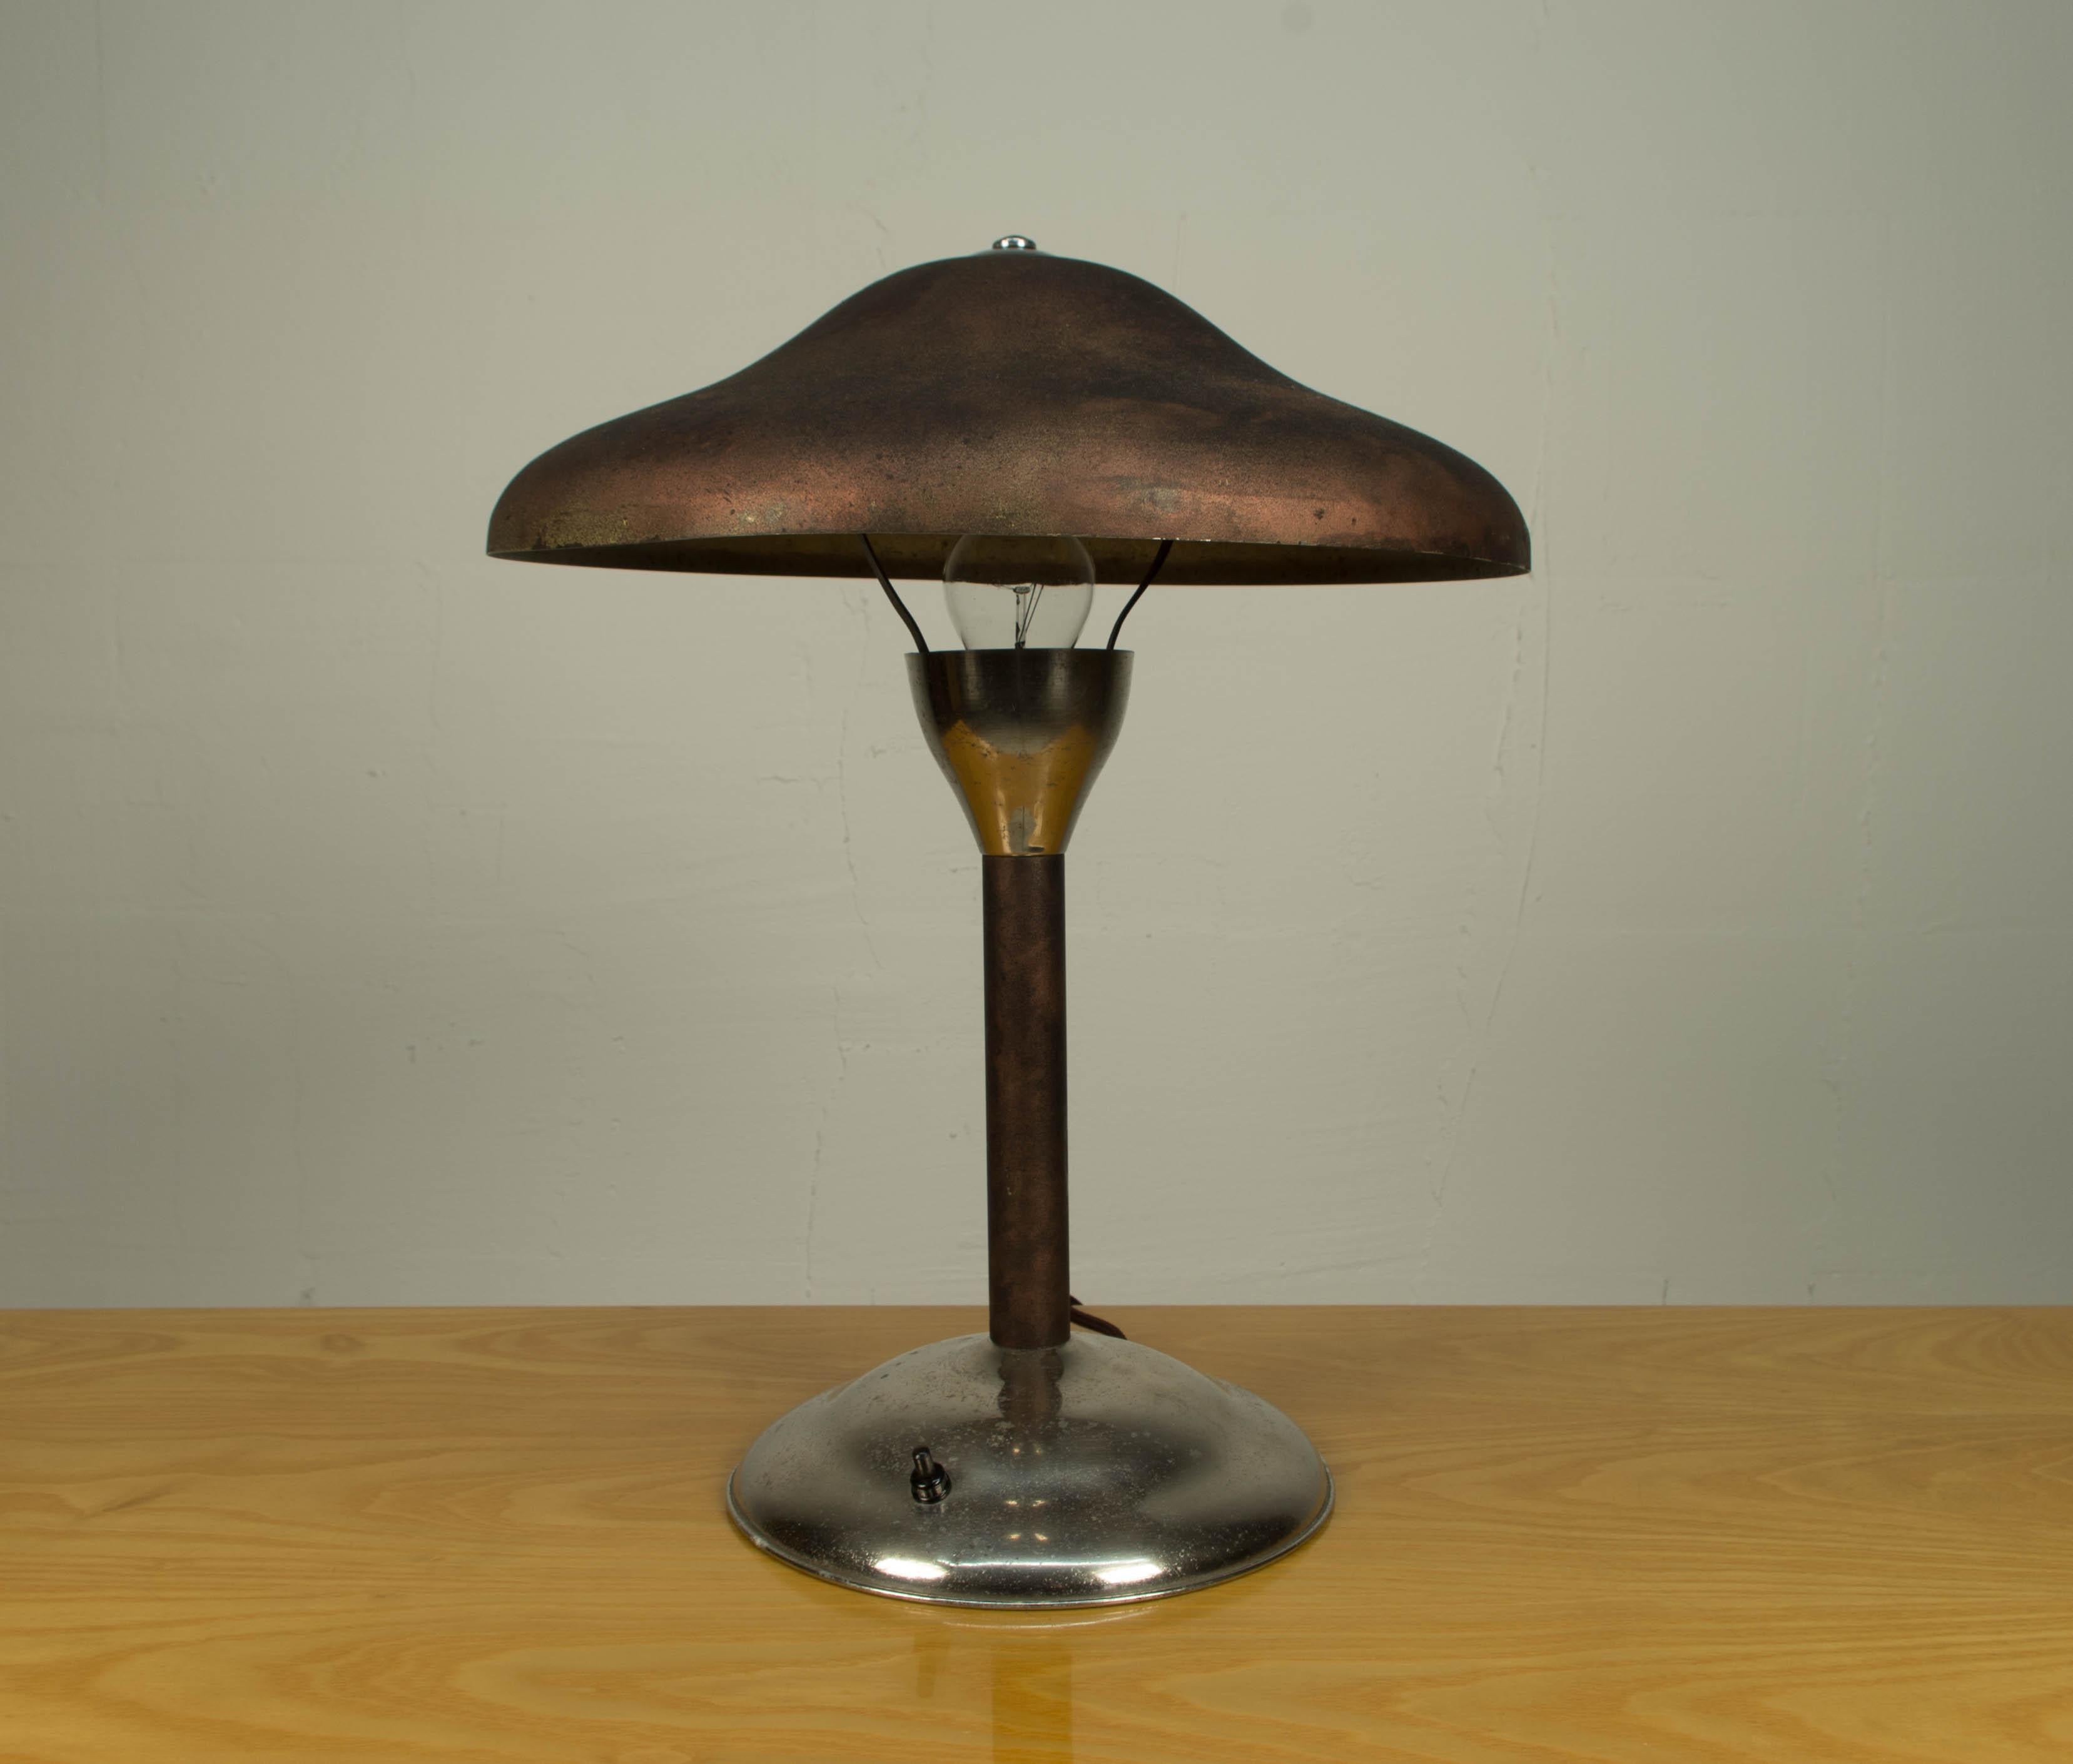 Rare lampe de table conçue par Frantisek Anyz pour sa société IAS dans les années 1920. Très bon état d'origine. Douille E26 ou E27.